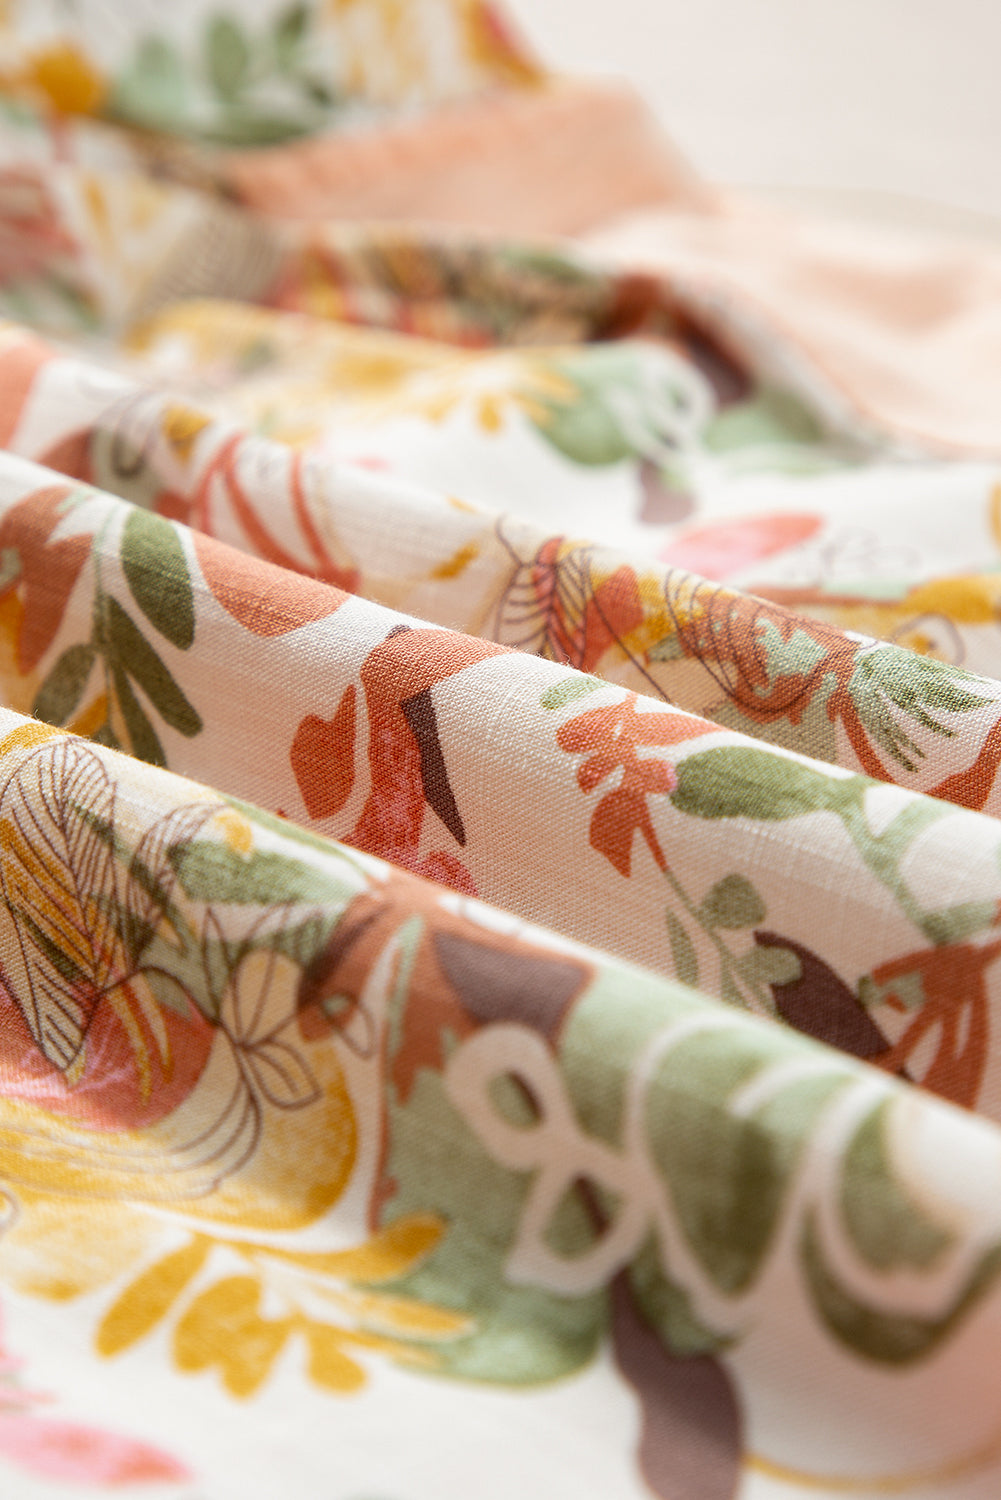 Aprikosenrosa geblümte Patchwork-Bluse mit eckigem Ausschnitt und Rüschenärmeln